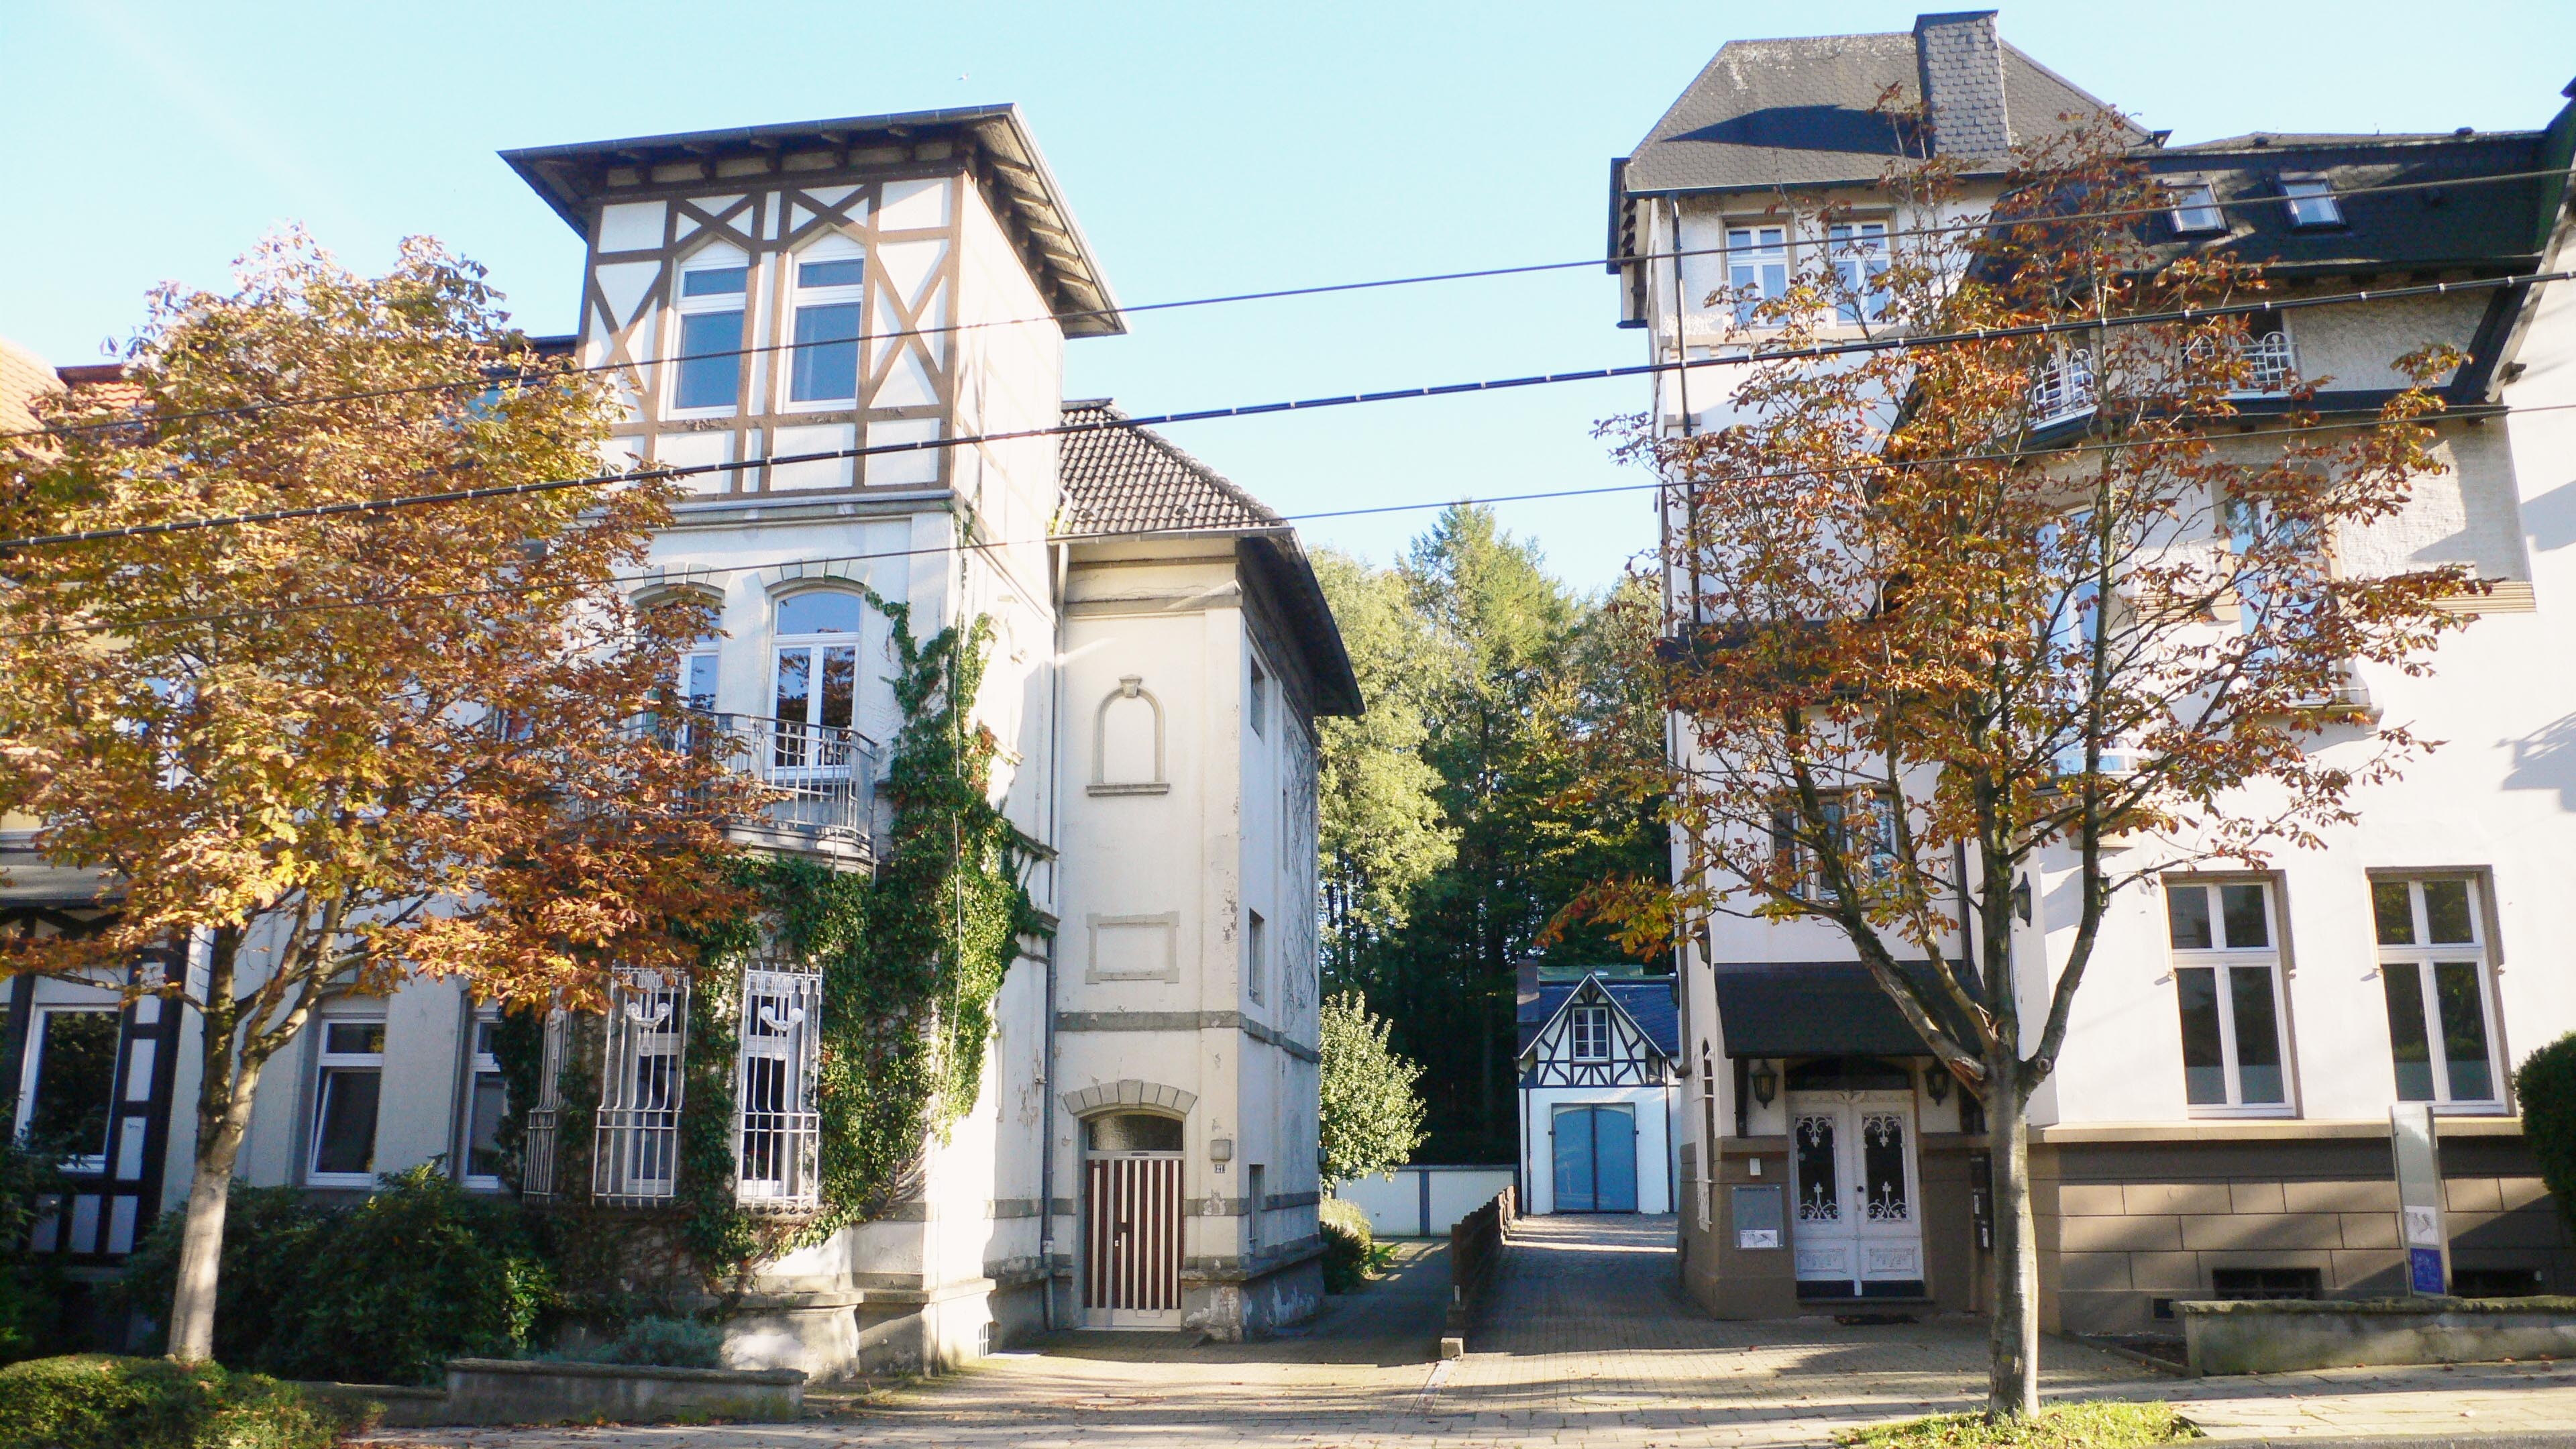 Häuser Bredeneyer Straße 21 und 23